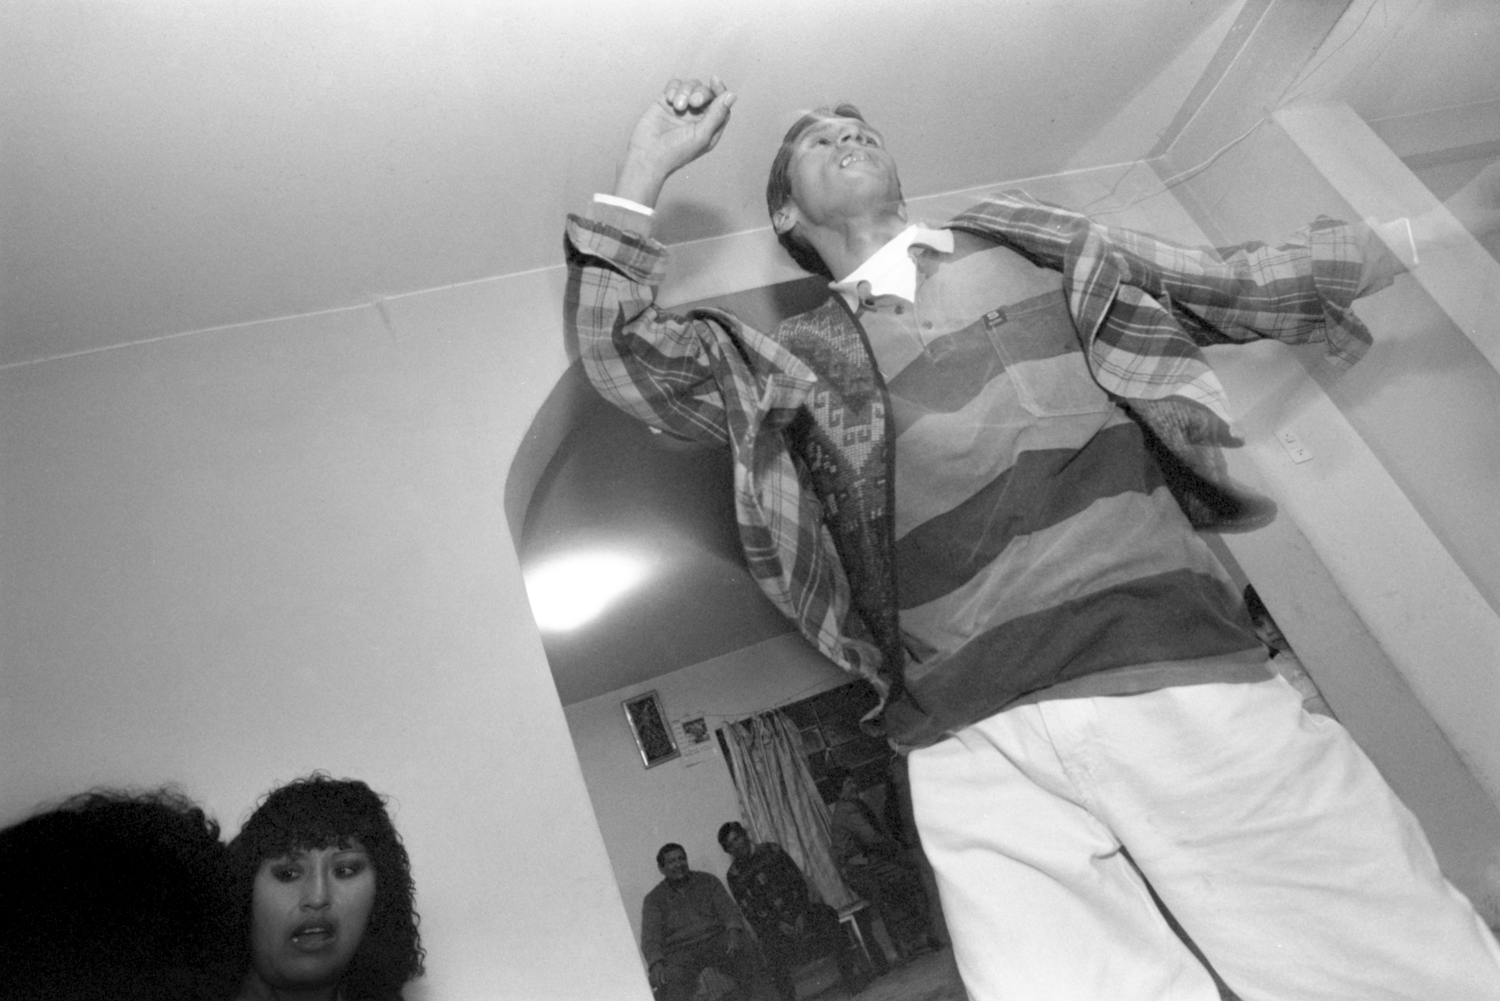 Octubre, 1996. Lucho Jara, coordinador del Grupo de Ayuda Mutua (GAM) Vida Nueva, salta mientras baila en una celebración para recaudar fondos para el tratamiento de salud de un compañero del GAM.